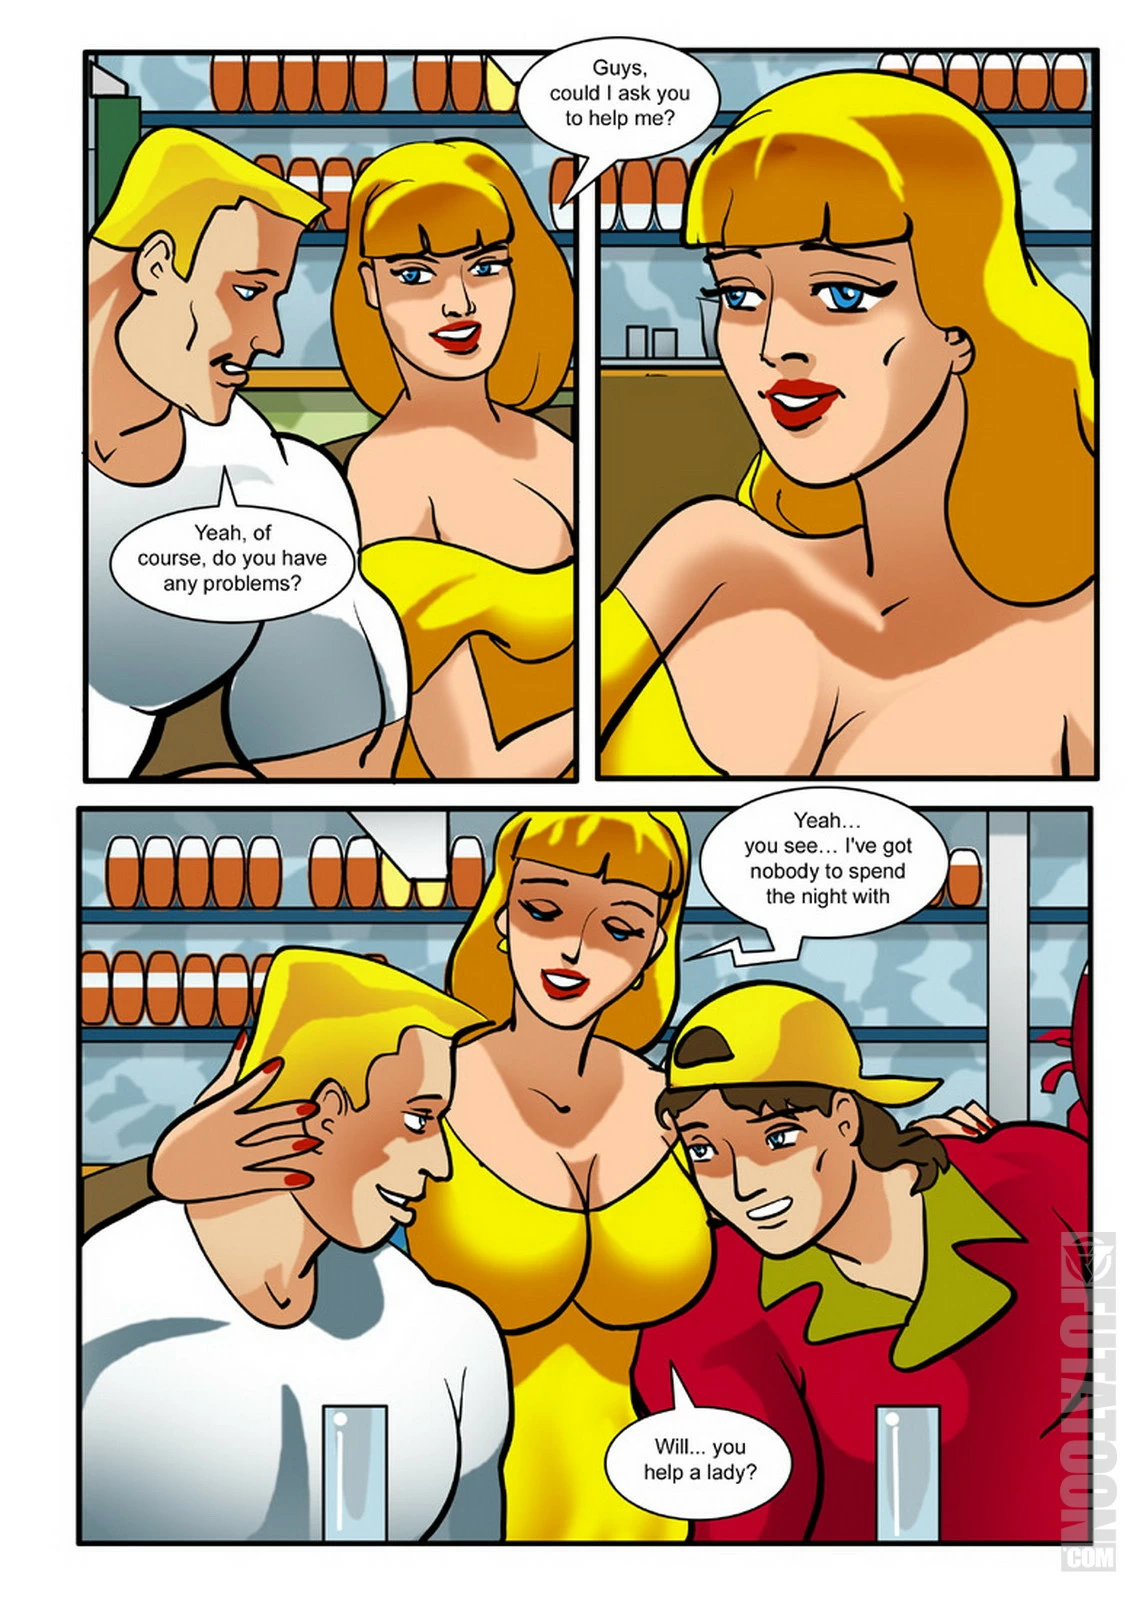 futanari threesome comics huge tits